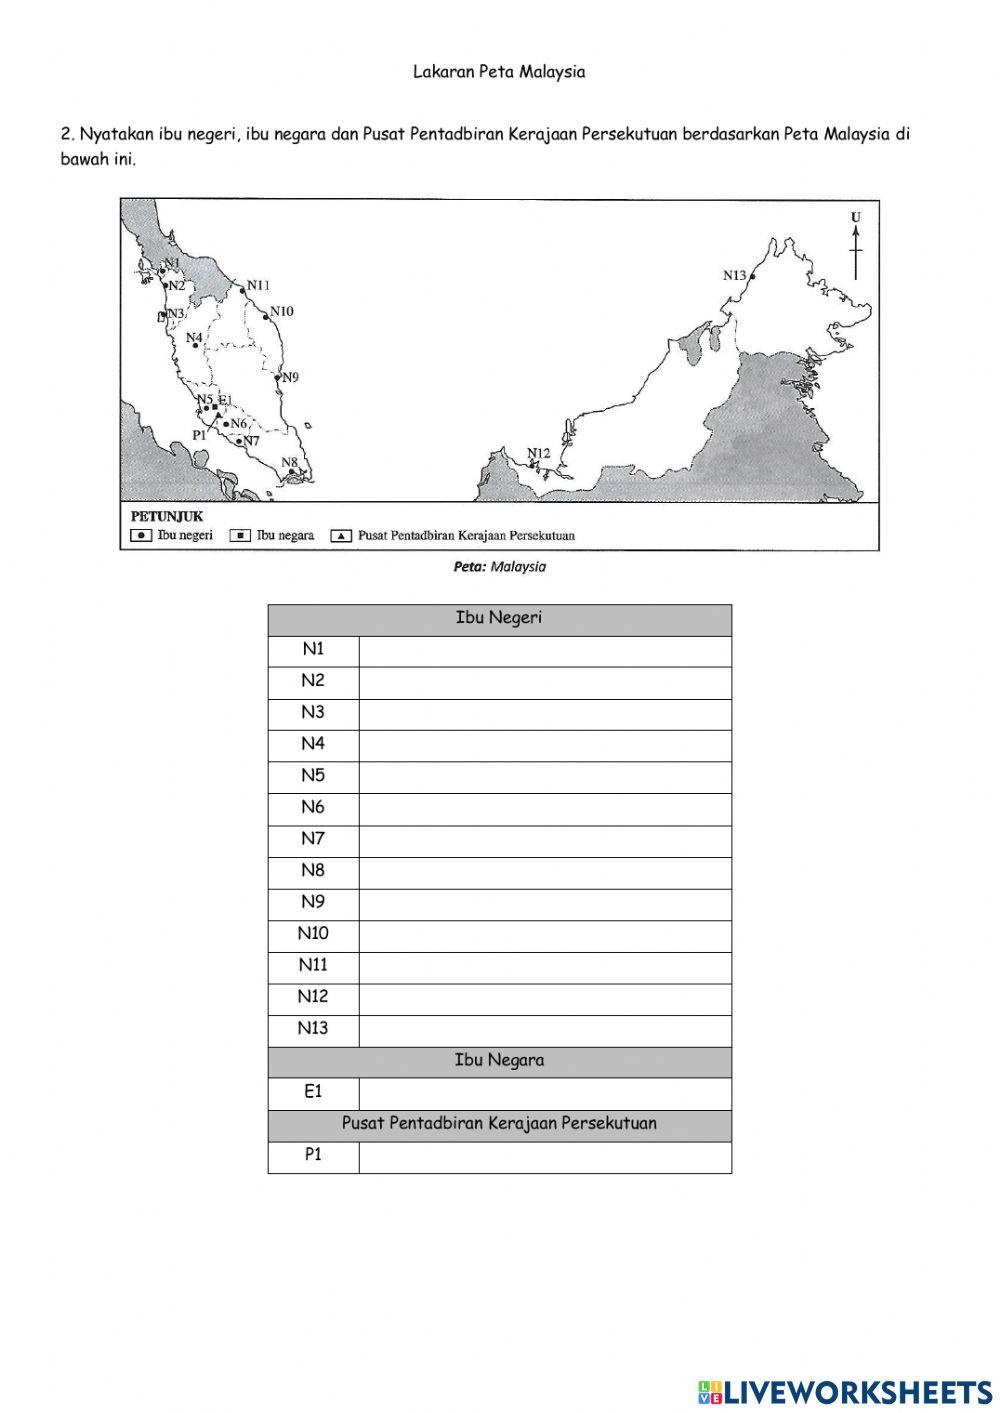 B4T1 Lakaran Peta Malaysia